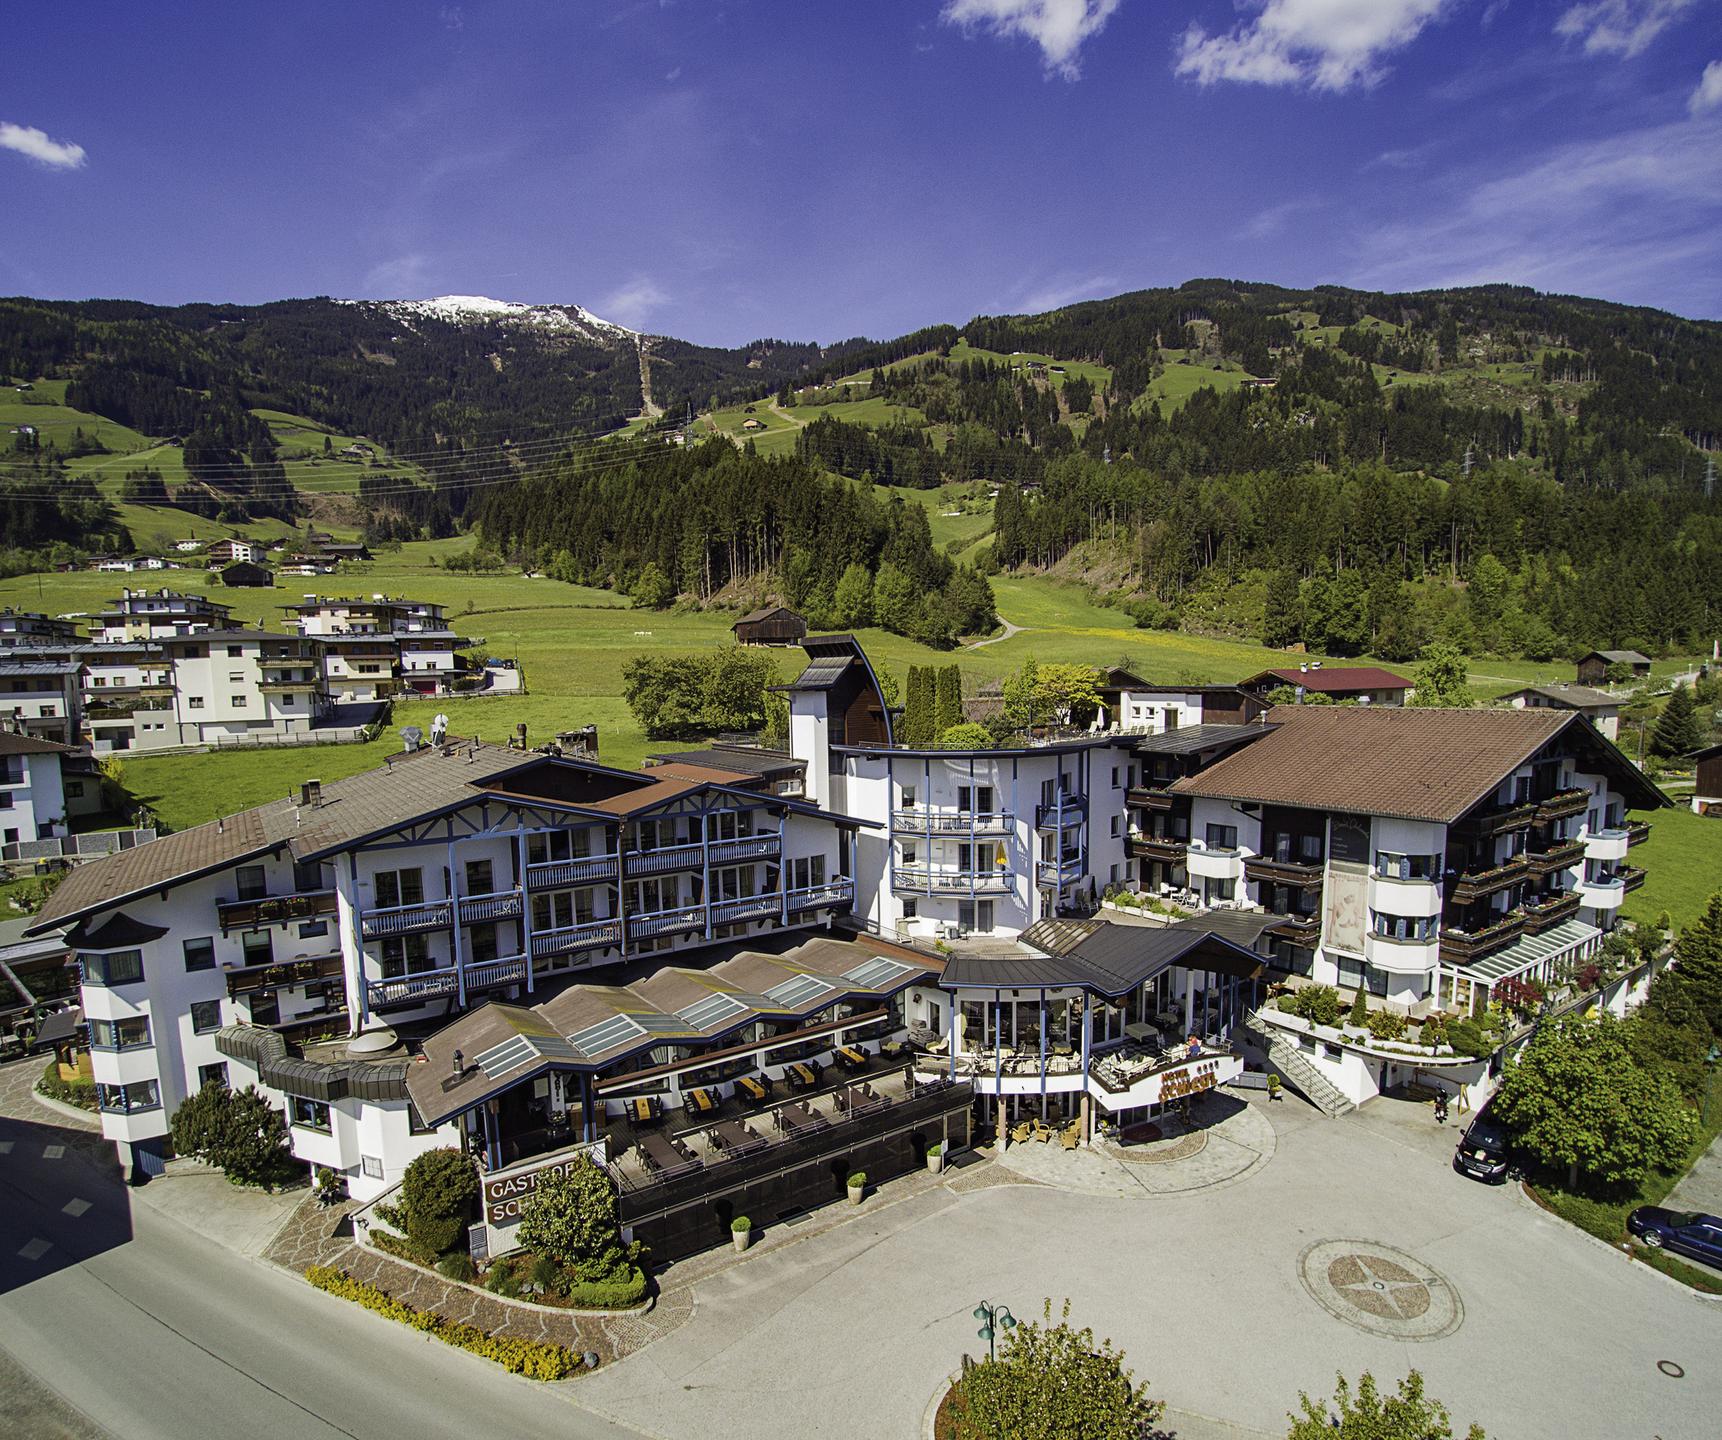 Hotel Schiestl in the Ziller valley